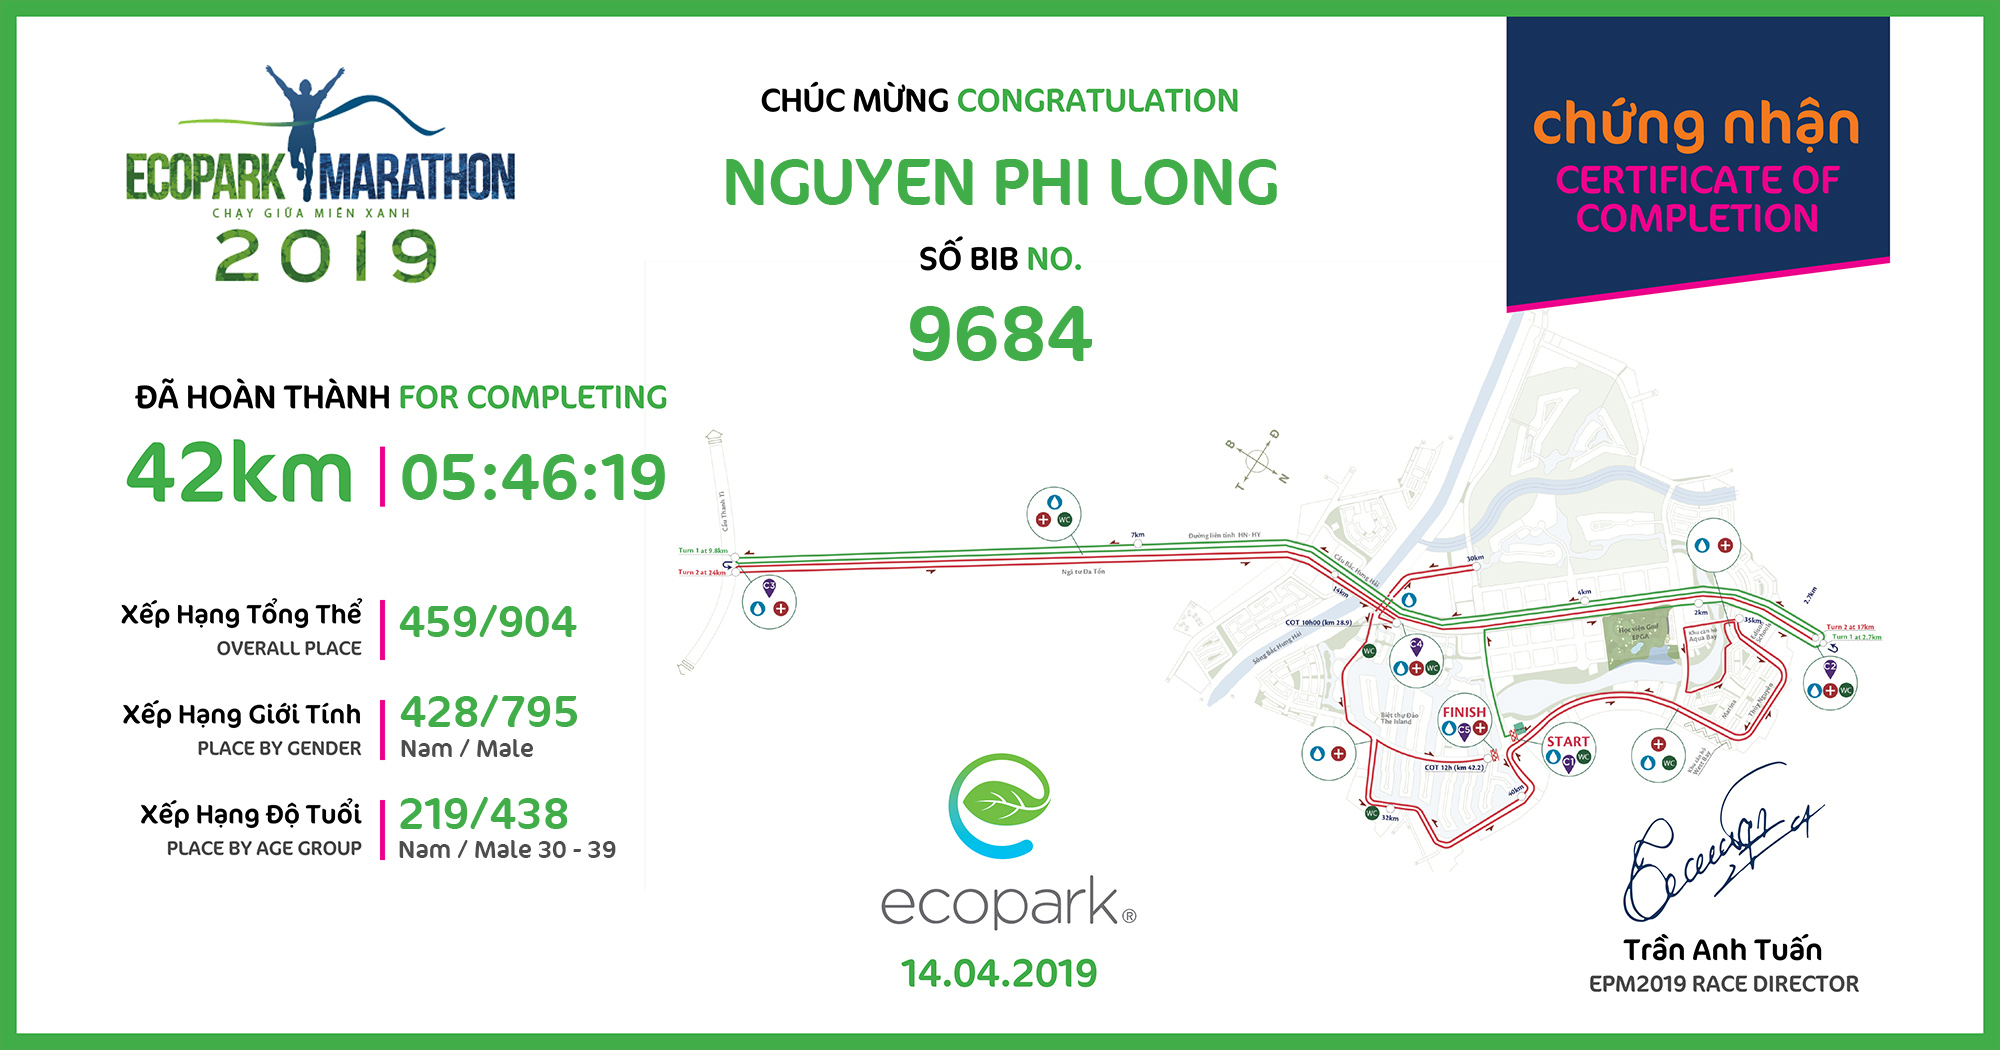 9684 - Nguyen Phi Long